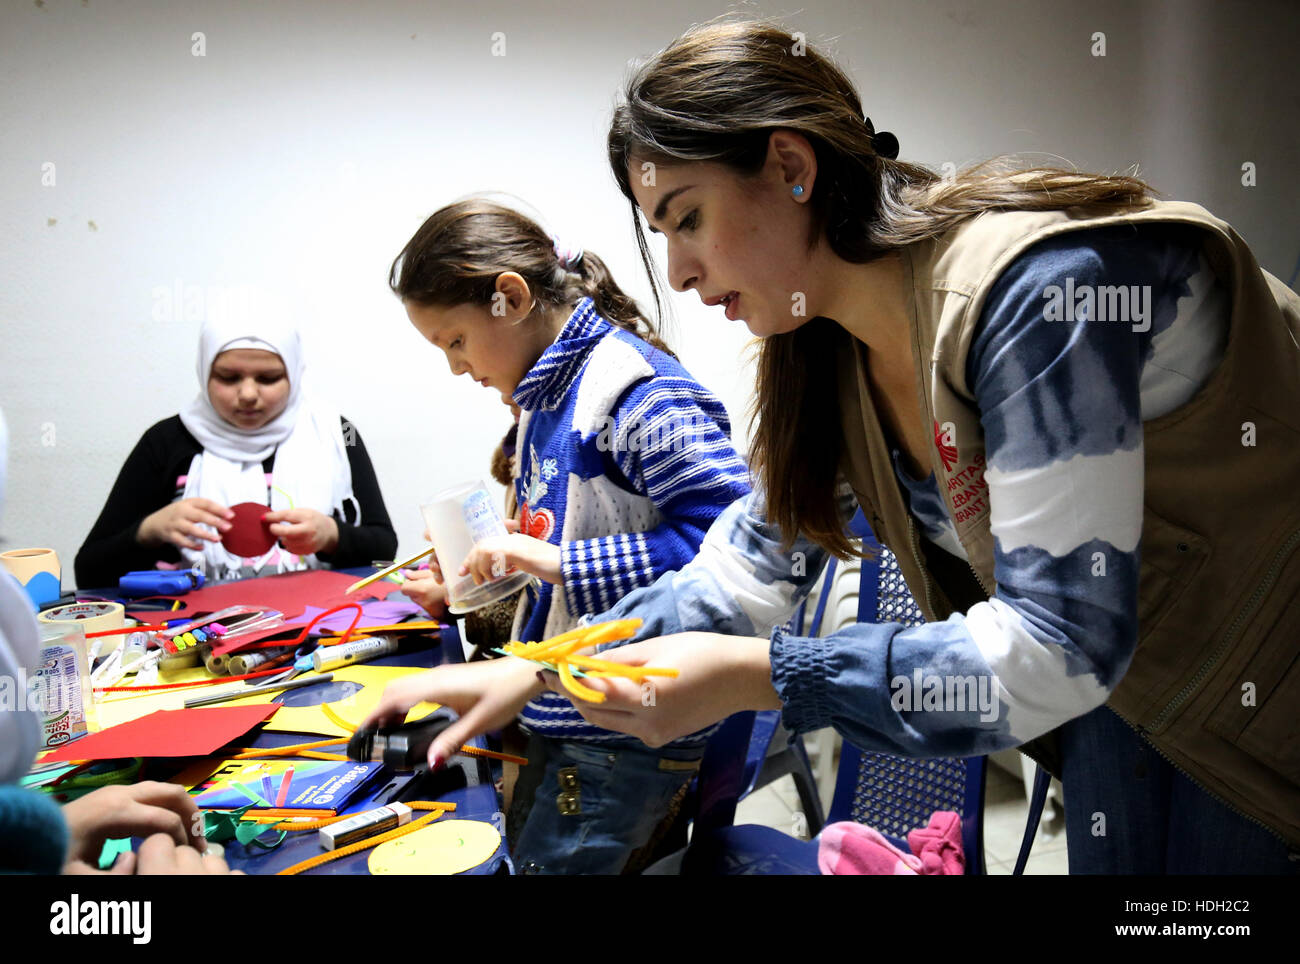 Psicologo Lina Zaarour corre un'arte terapia classe siriano per i bambini rifugiati presso un centro della Caritas nella valle della Bekaa regione del Libano. Le classi fanno parte della cura psicologica dato ai bambini per aiutarli a superare il trauma della guerra con arti e mestieri e giochi. Foto Stock